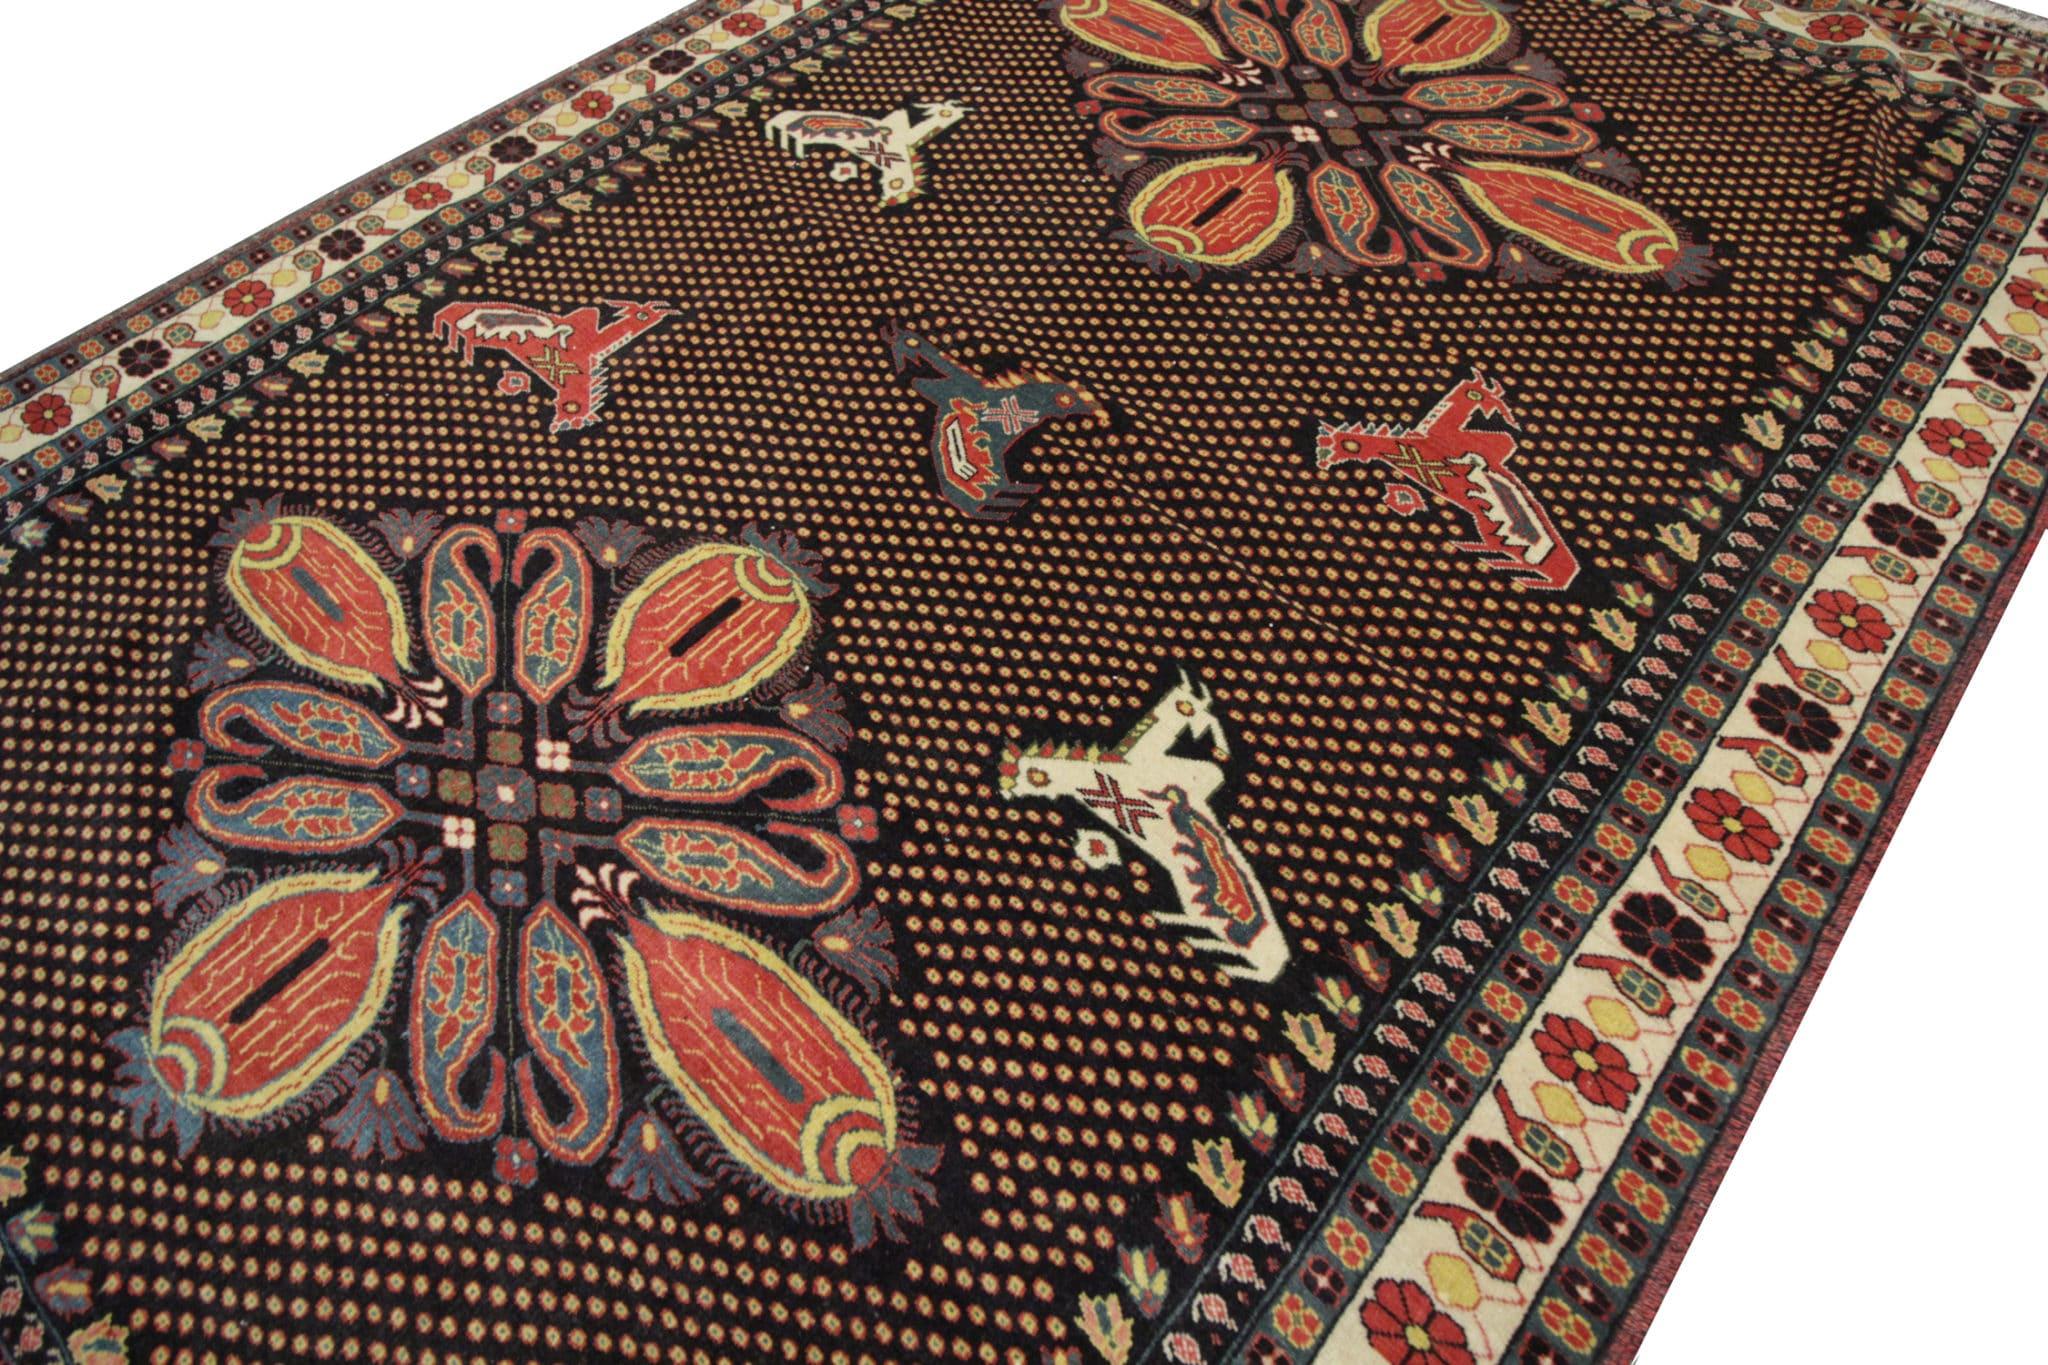 Erleben Sie das reiche Erbe und die zeitlose Schönheit unseres Paisley-Teppichs im Vintage-Stil, ein Zeugnis fachmännischer Handwerkskunst. Dieses exquisite Stück aus den 1960er Jahren wurde von erfahrenen Kunsthandwerkern mit größter Sorgfalt von